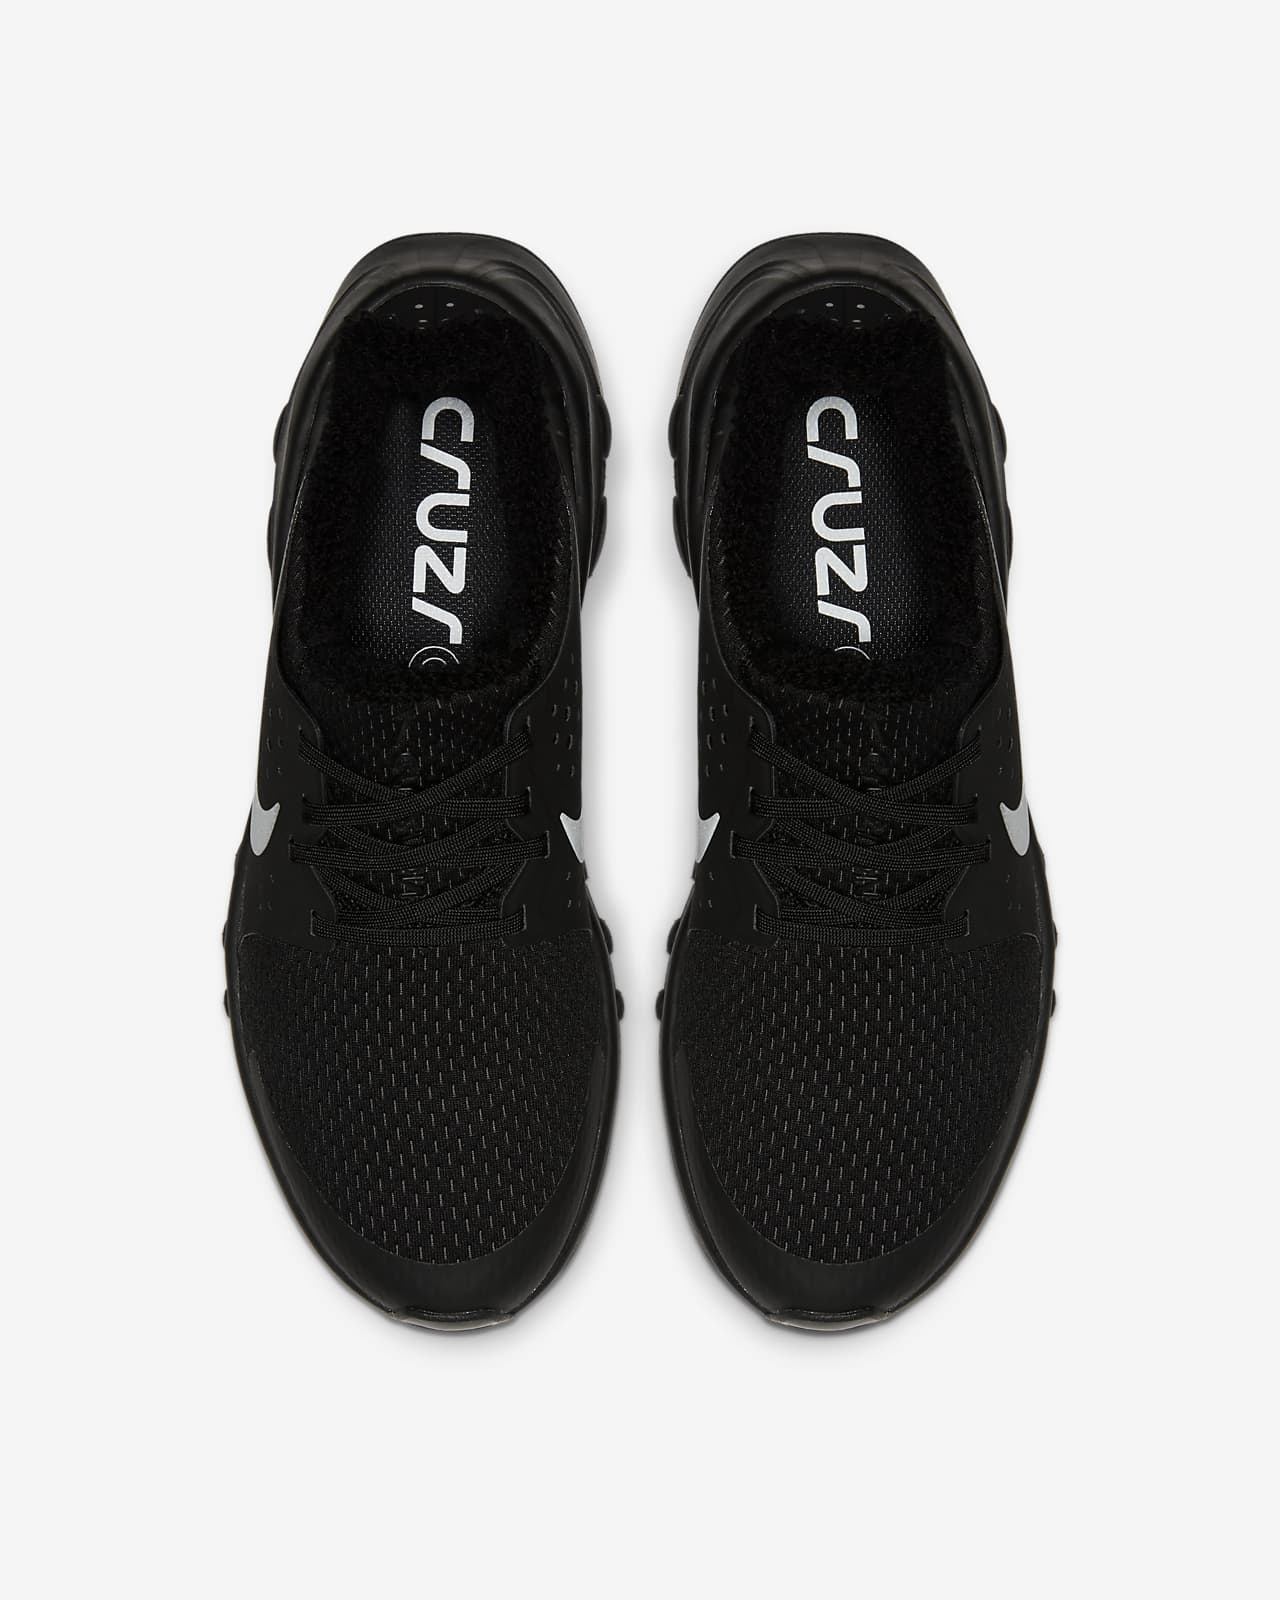 cruzrone triple black shoe